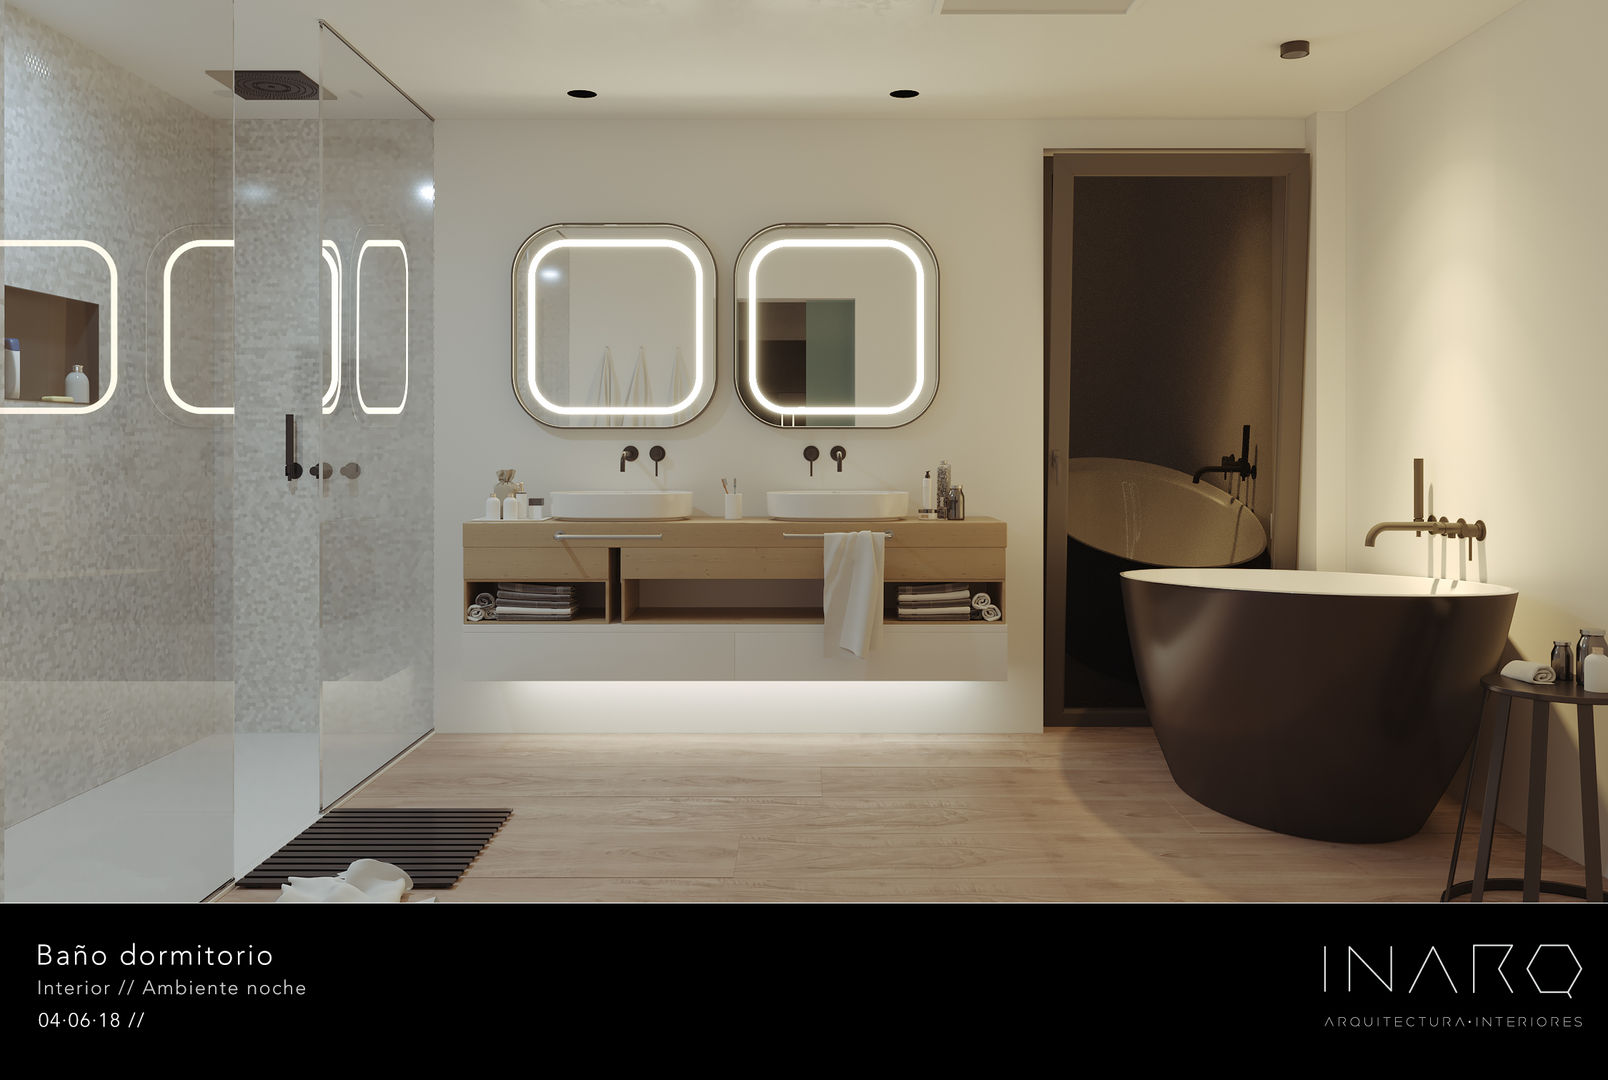 Baño en suite INARQ Espacio Baños de estilo moderno Cerámico baño,moderno,bañera,diseño,negro mate,espacio,lavabo,doble,a medida,espejo,iluminación,integrada